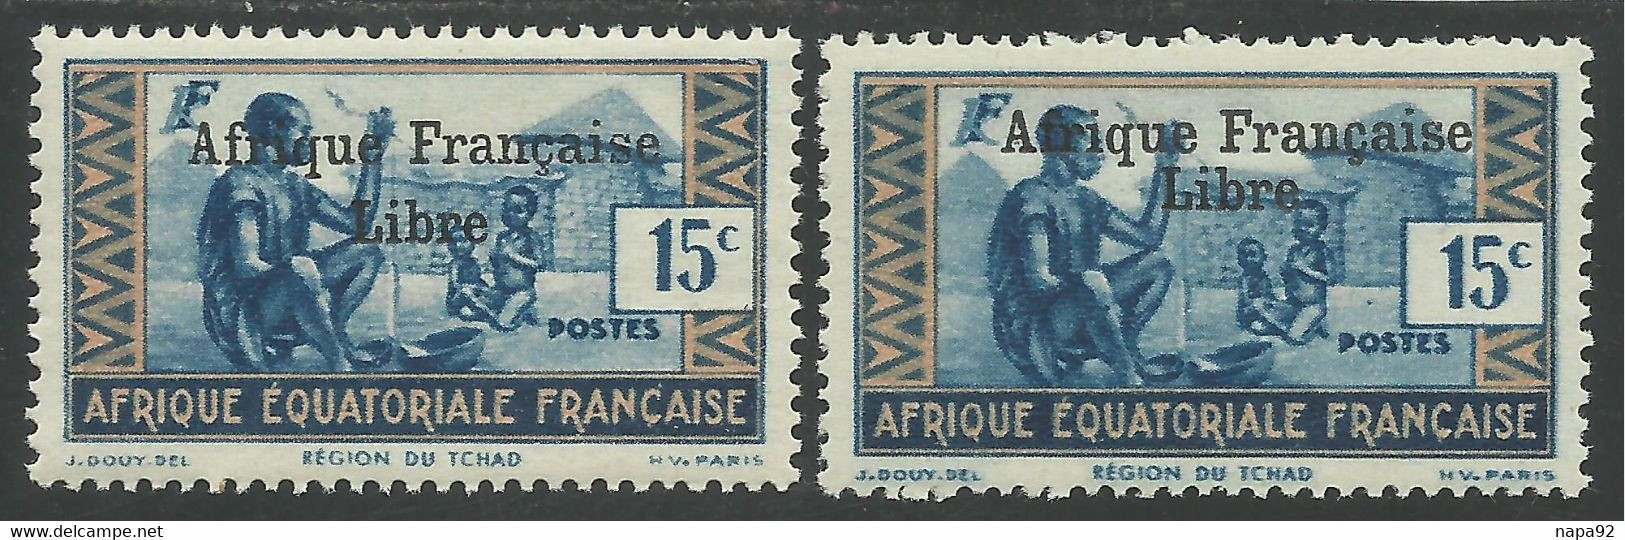 AFRIQUE EQUATORIALE FRANCAISE - AEF - A.E.F. - 1941 - YT 161** - 2ème TIRAGE - Unused Stamps